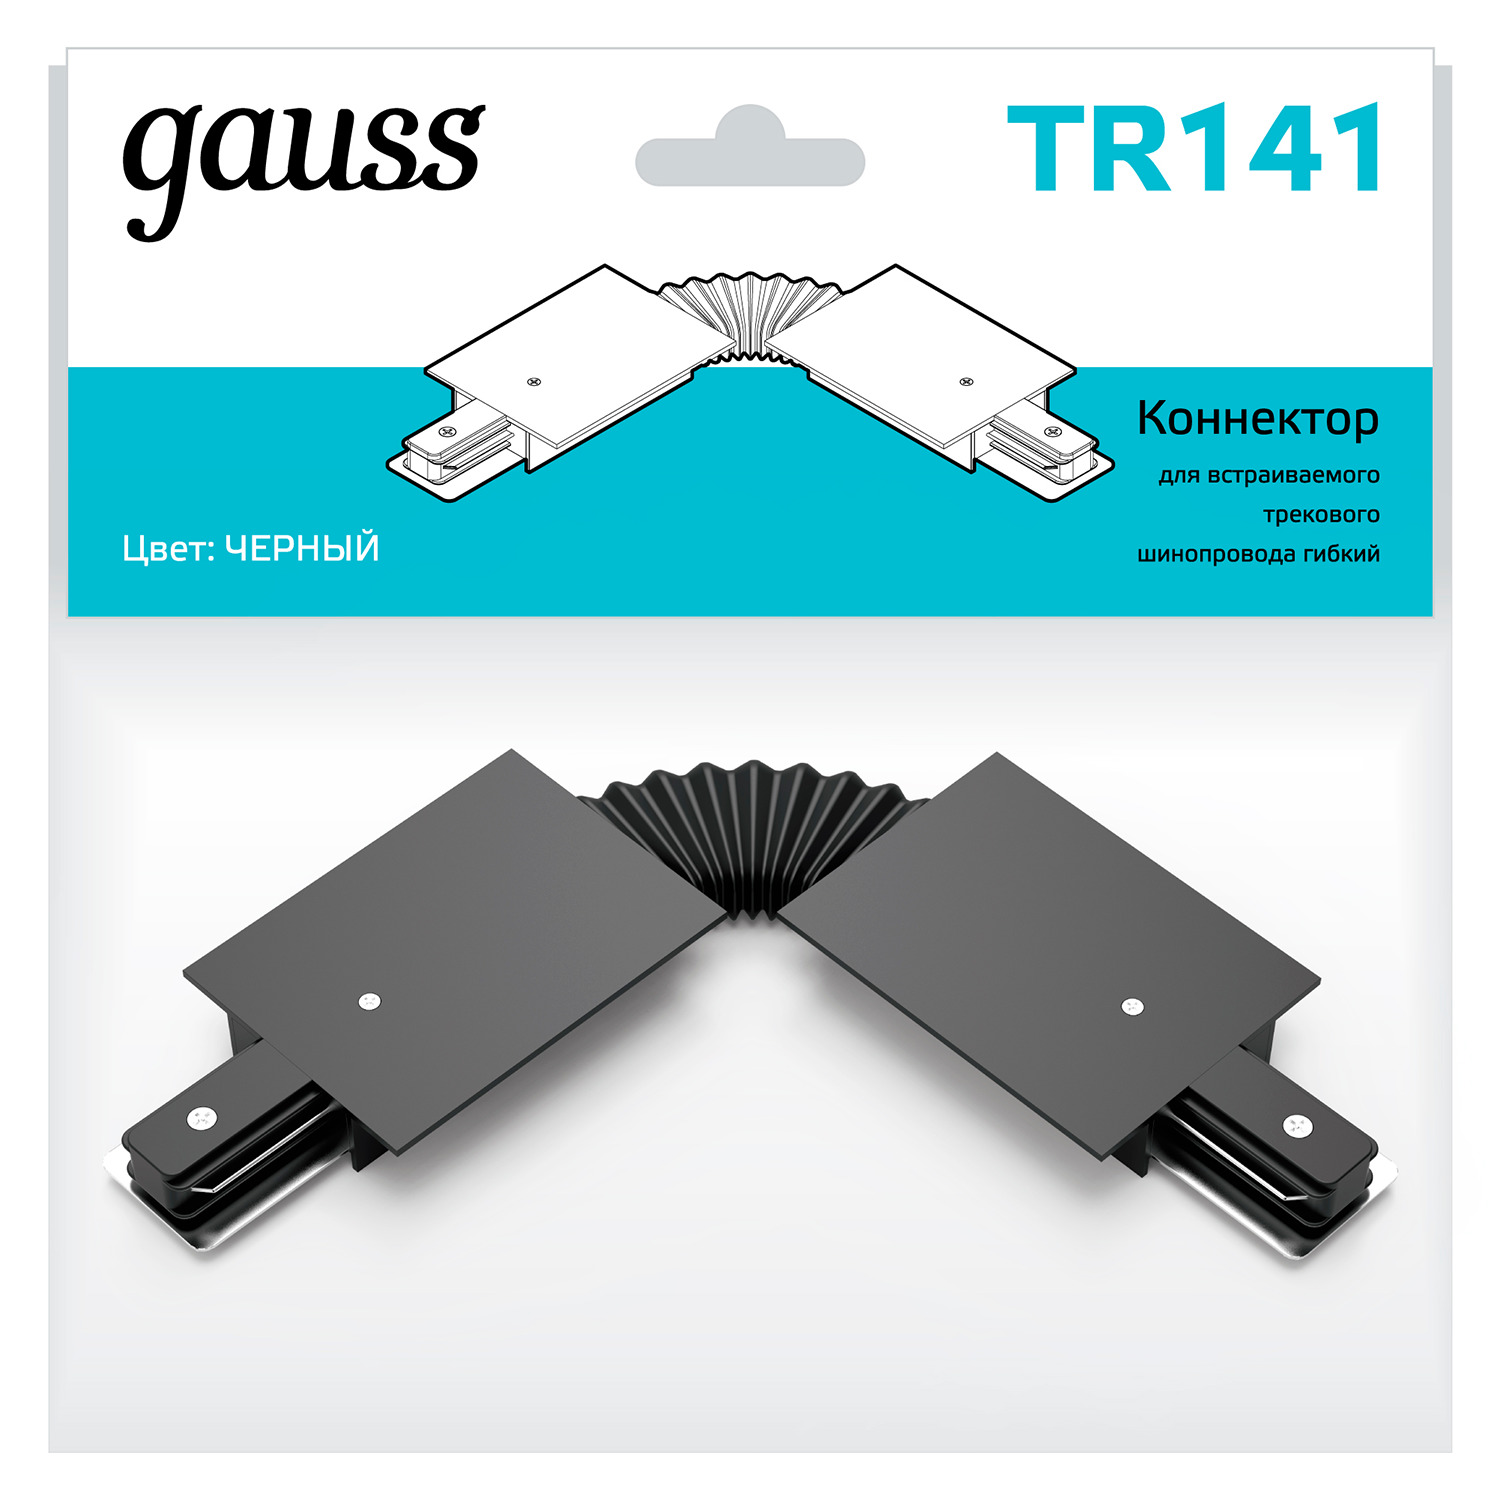 Коннектор Gauss для встраиваемых трековых шинопроводов гибкий (I) черный светильники gauss коннектор для встраиваемых трековых шинопроводов x образный